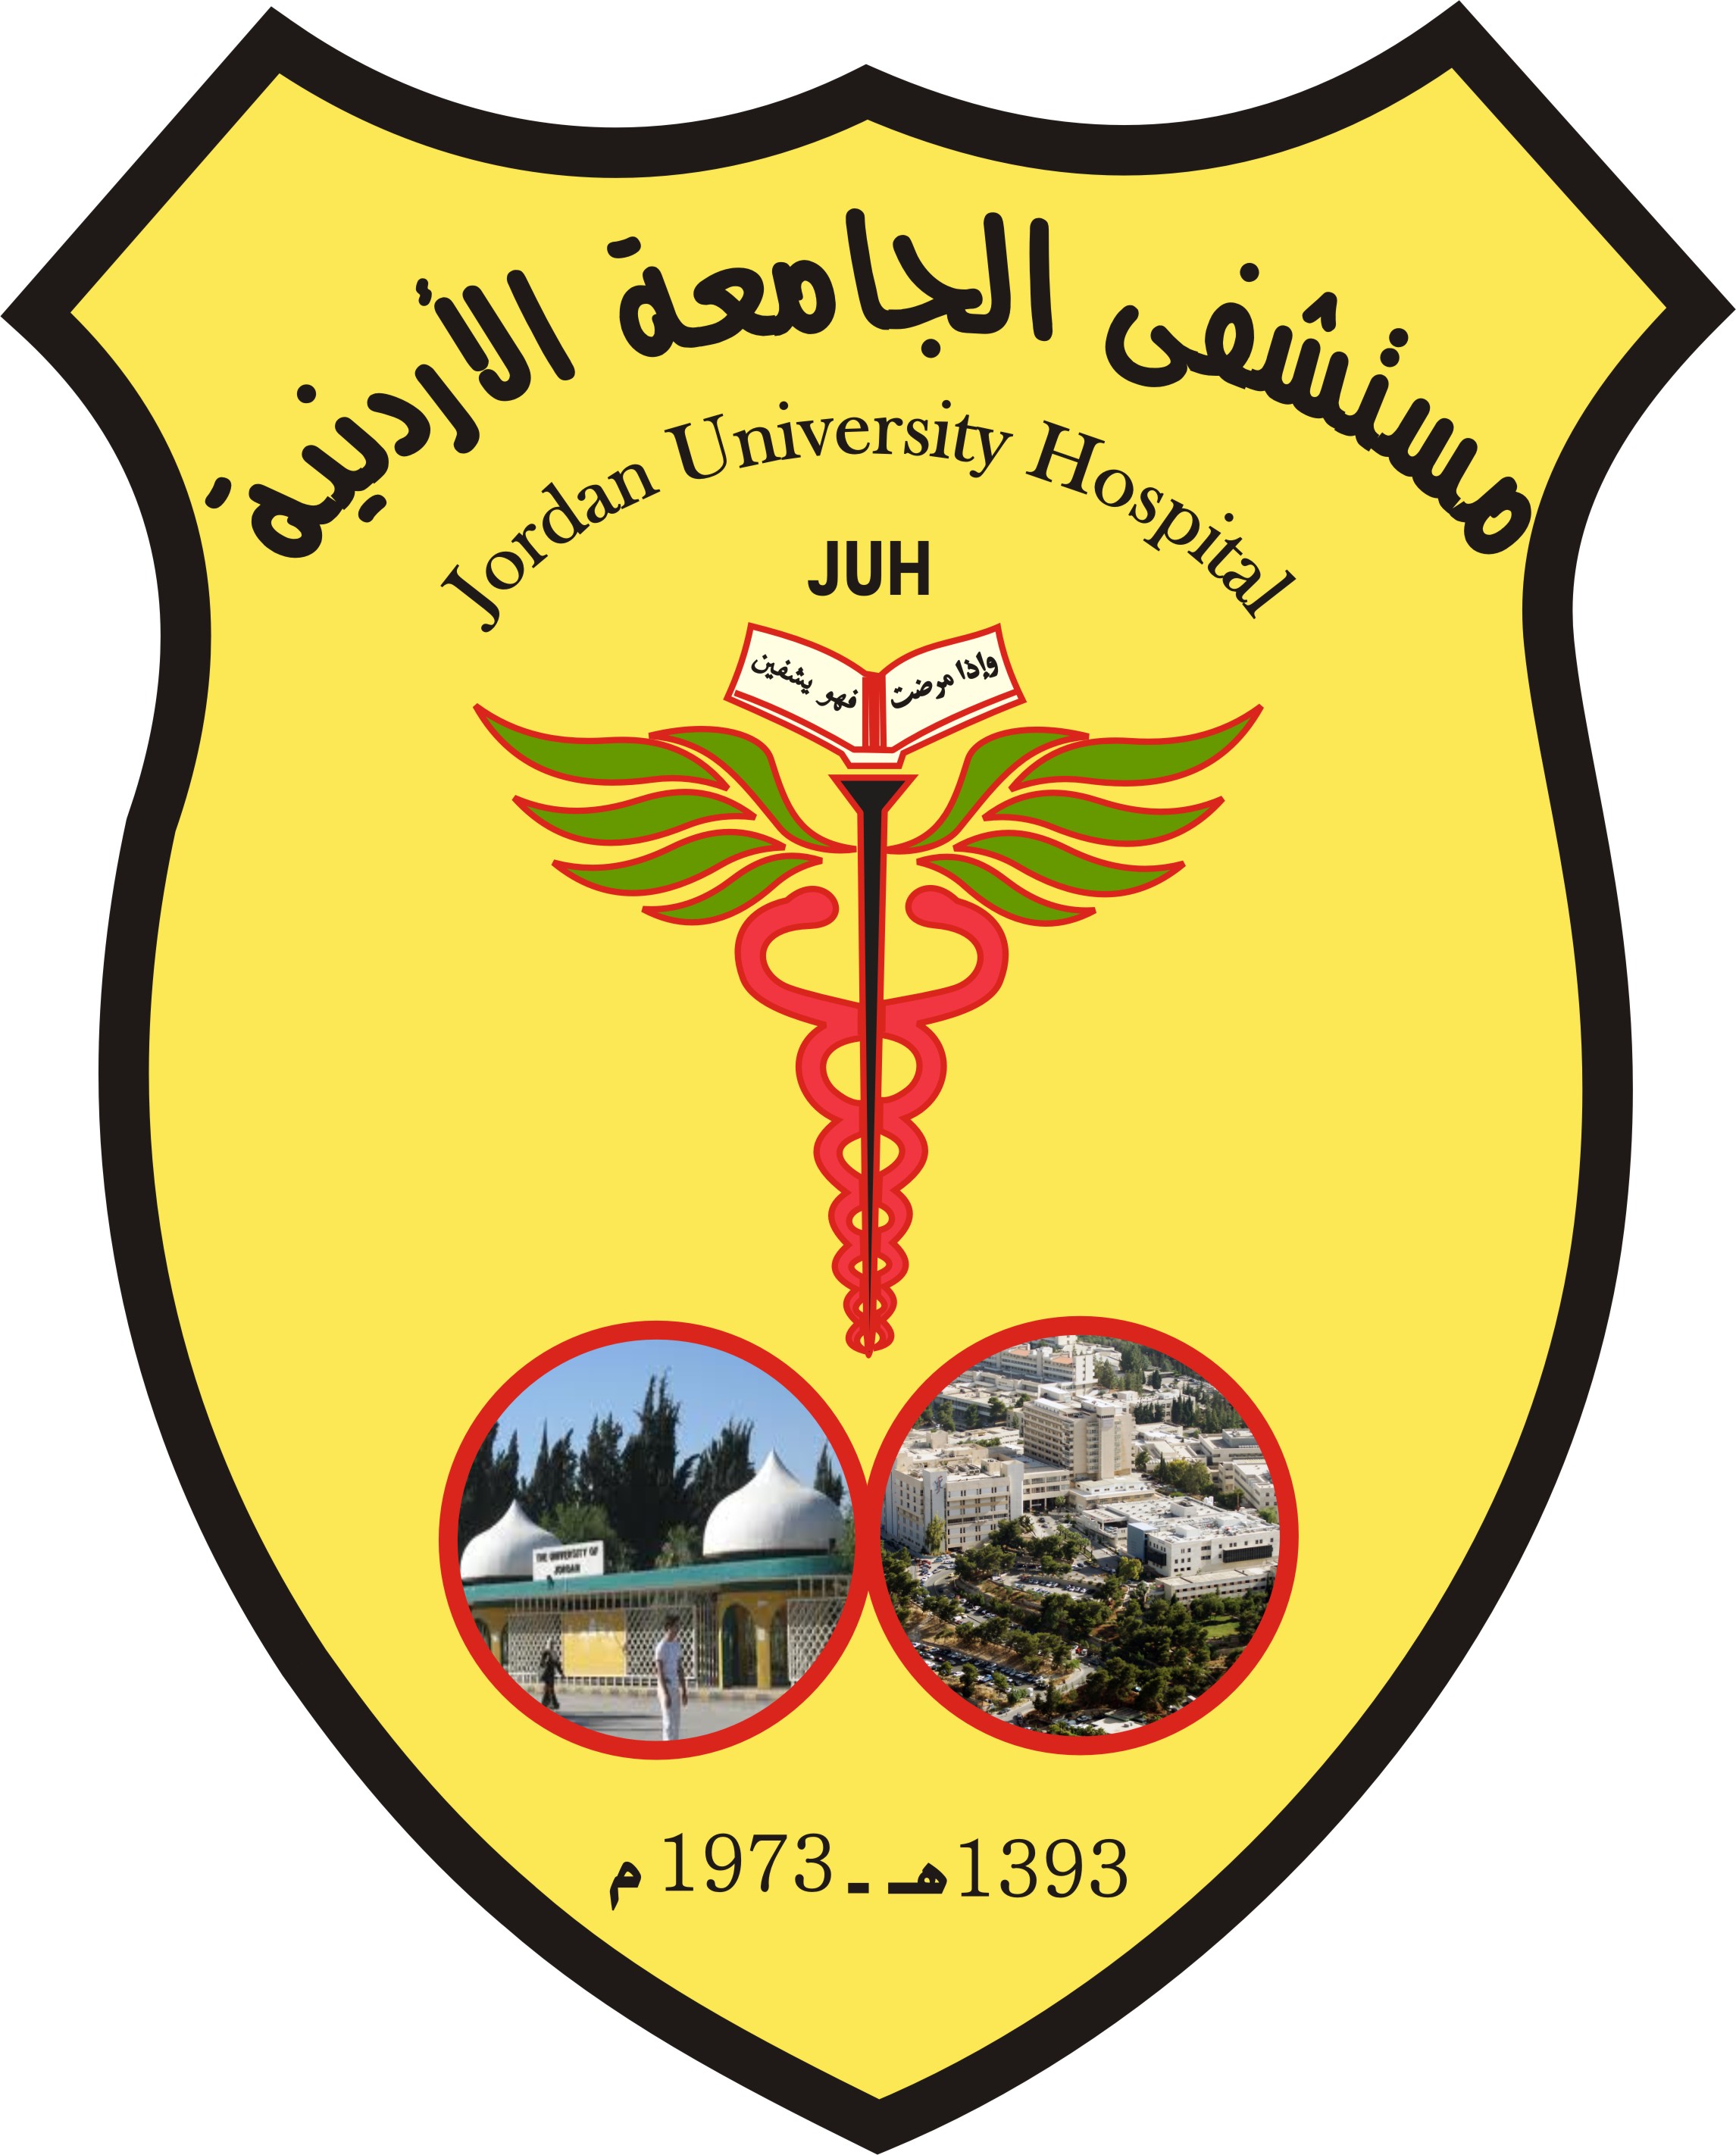 ورشة عمل حول "الحد من التقرّحات السريريّة" في مستشفى الجامعة الأردنية